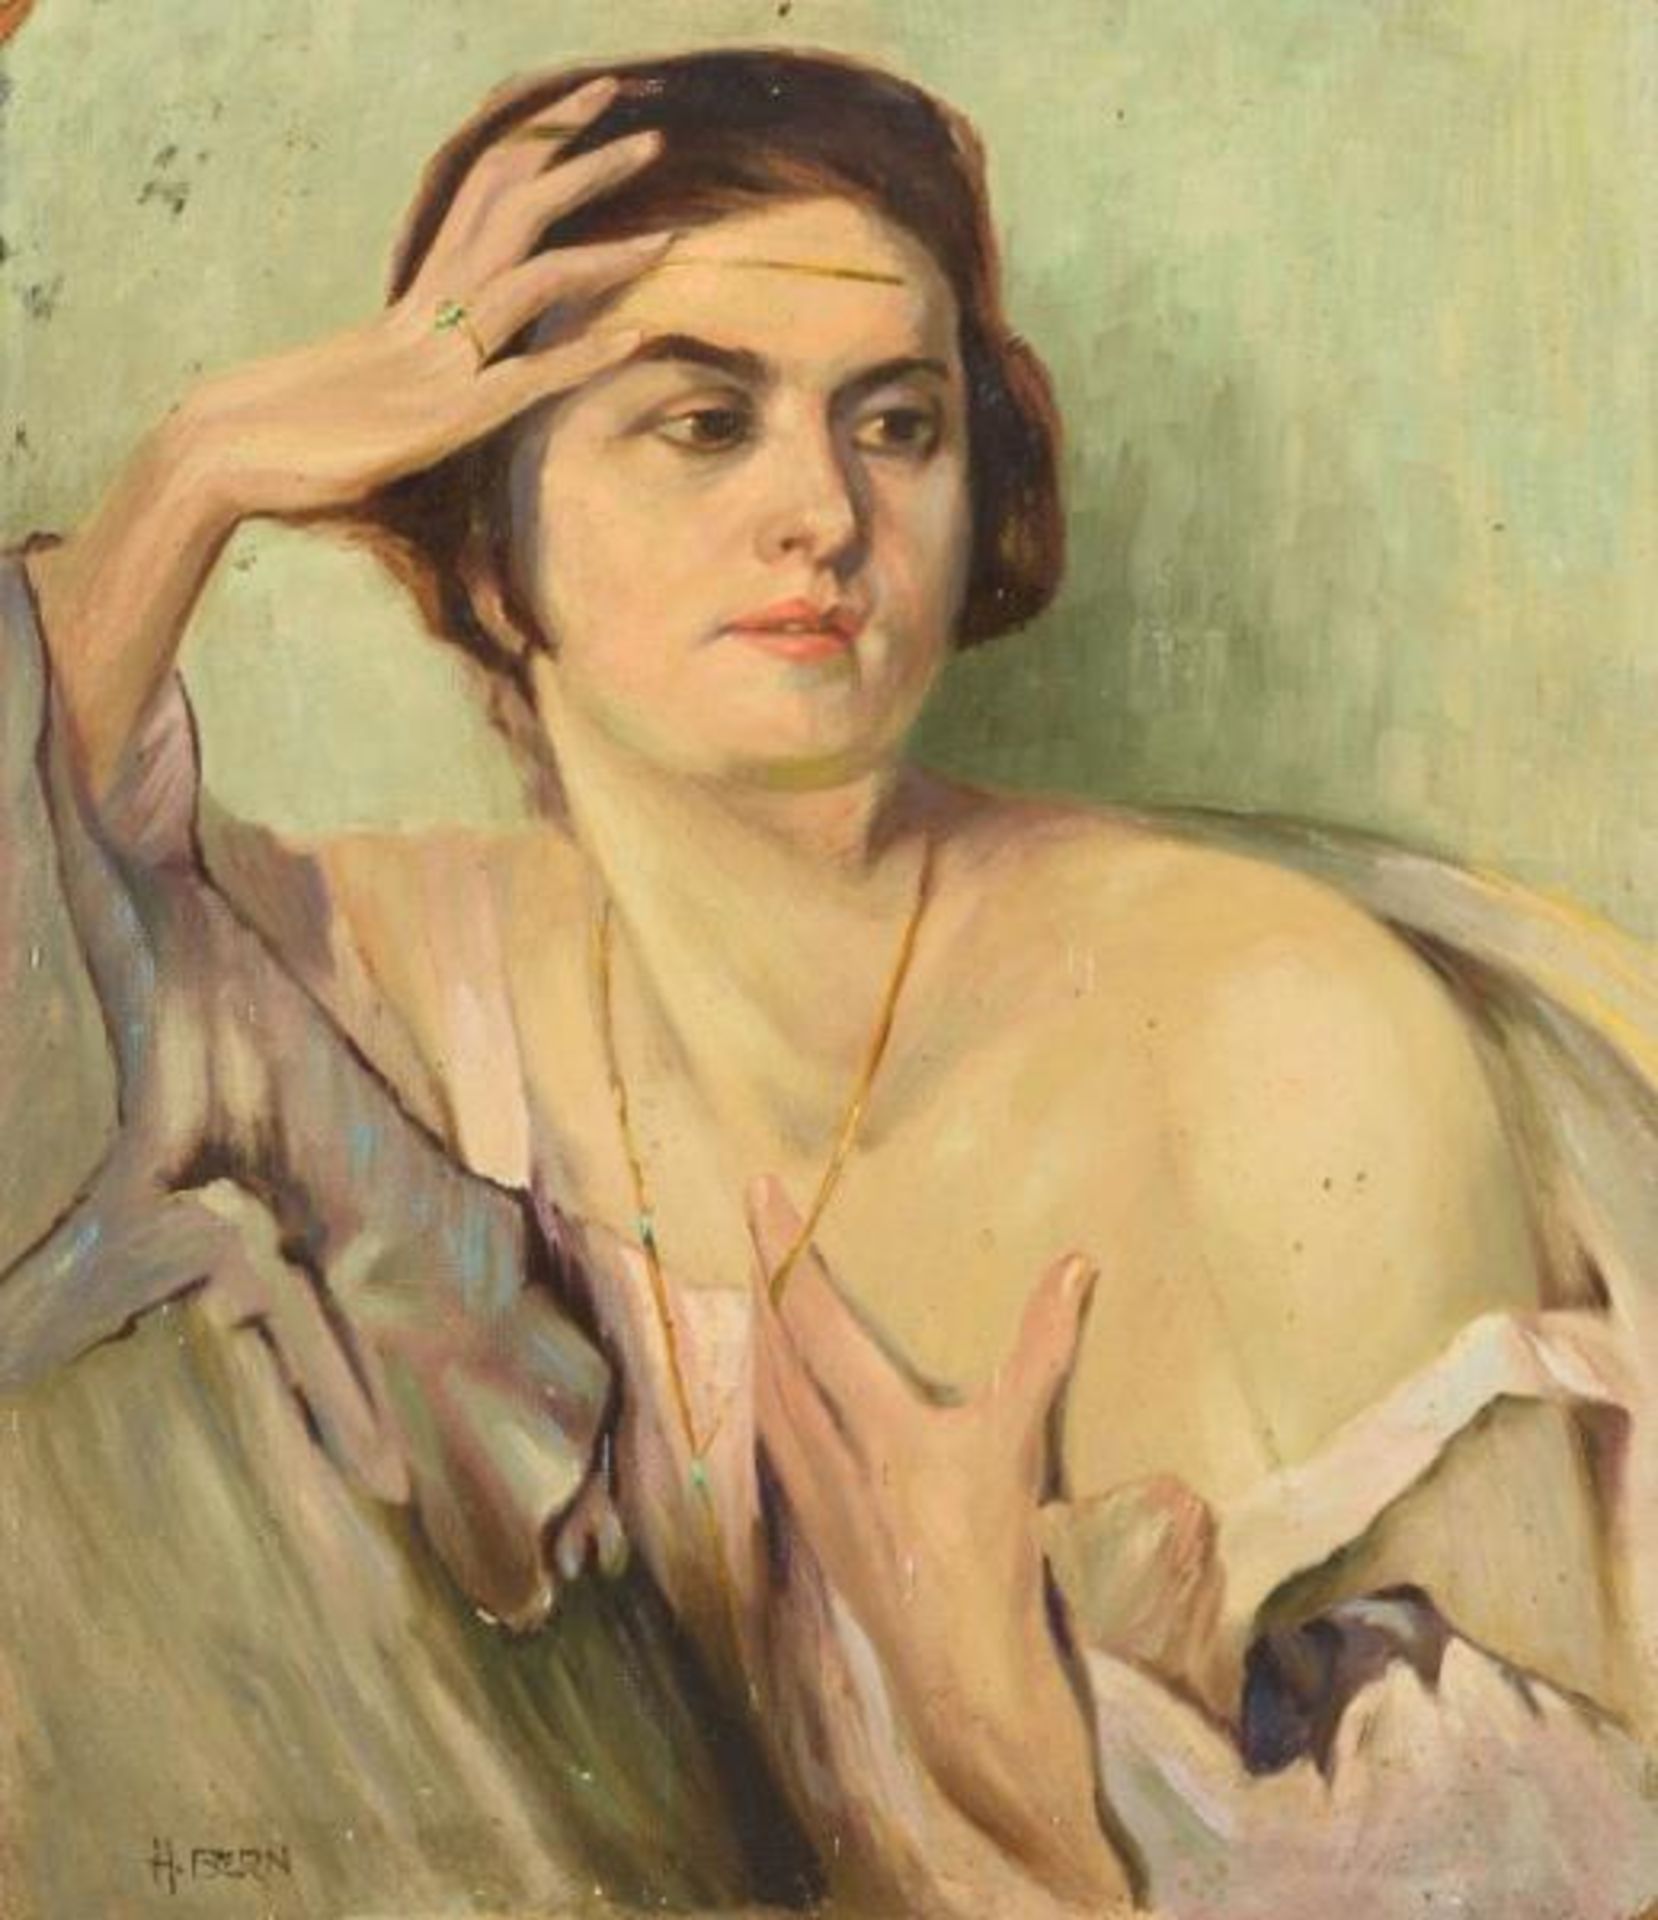 BERN, H.. Porträt einer jungen Frau.